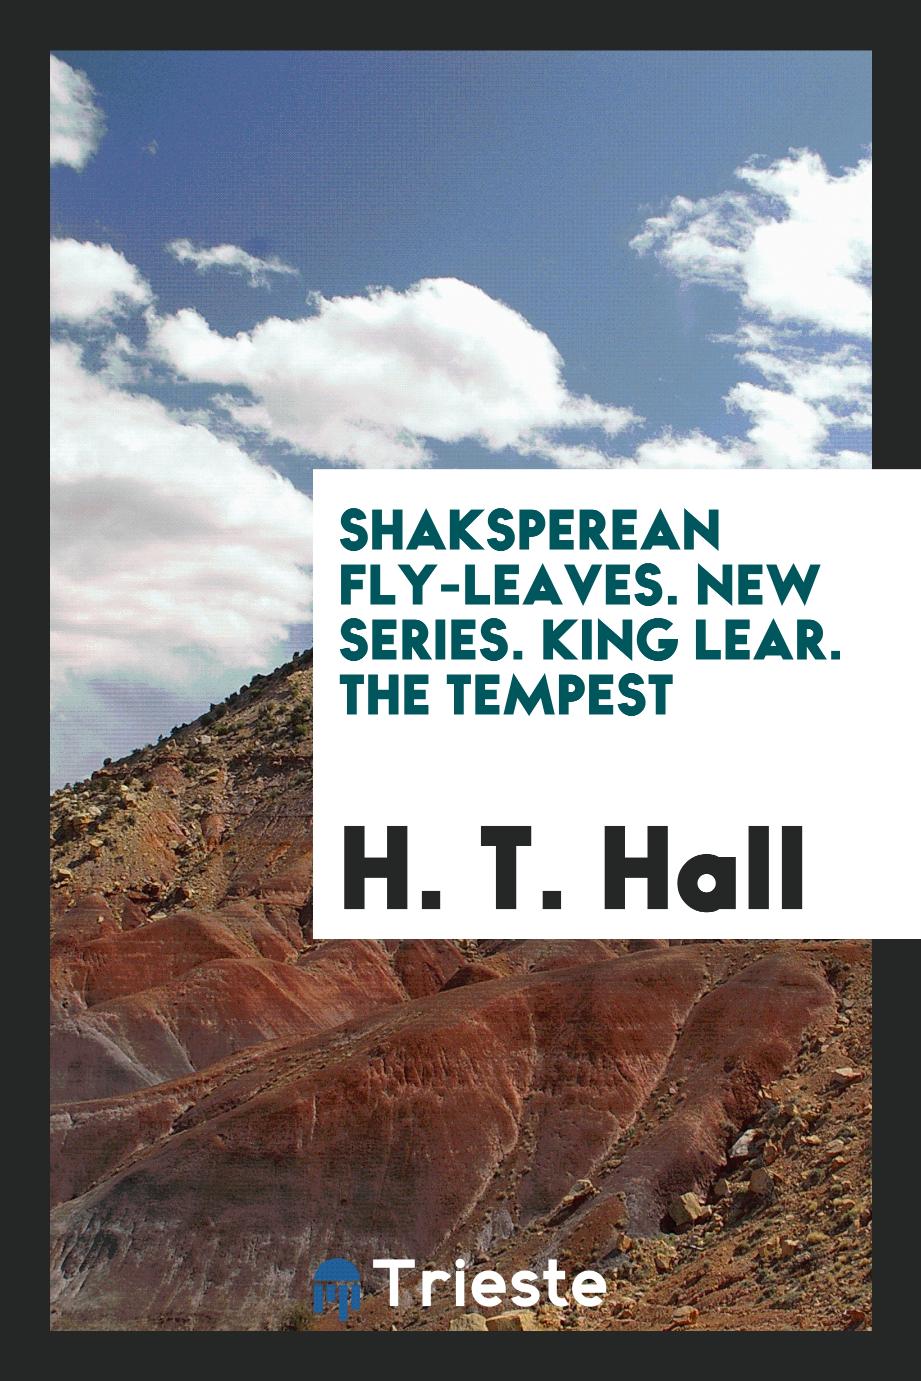 Shaksperean Fly-leaves. New series. King Lear. The tempest